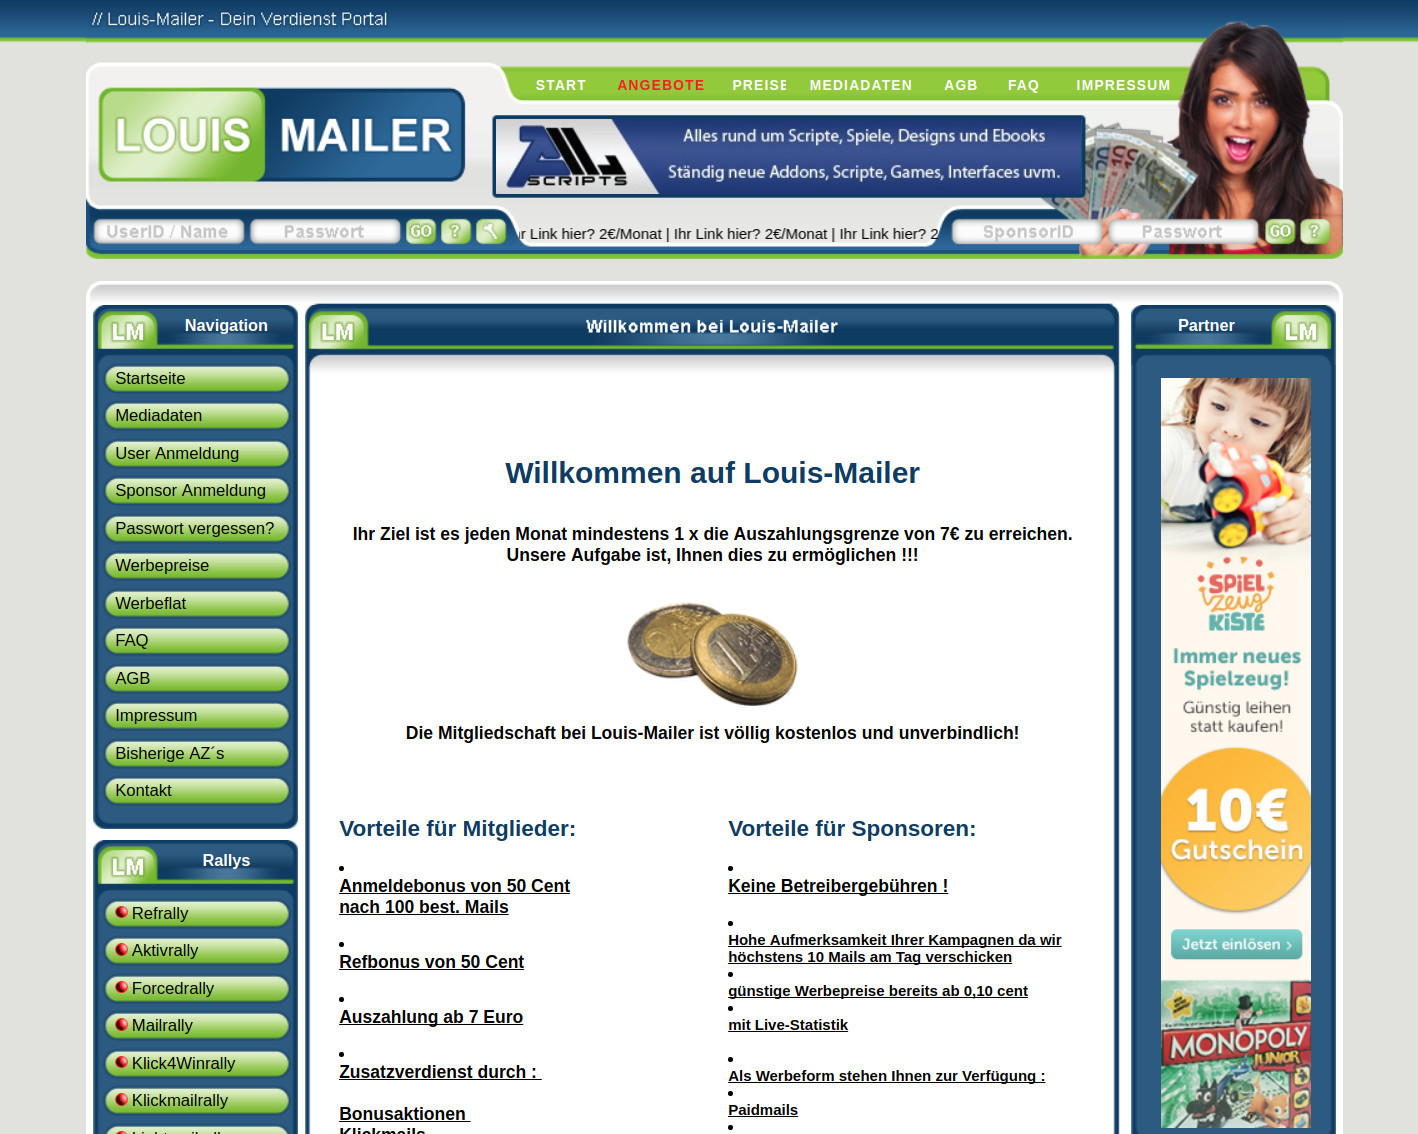 Louis-Mailer.de - Test und Erfahrungen